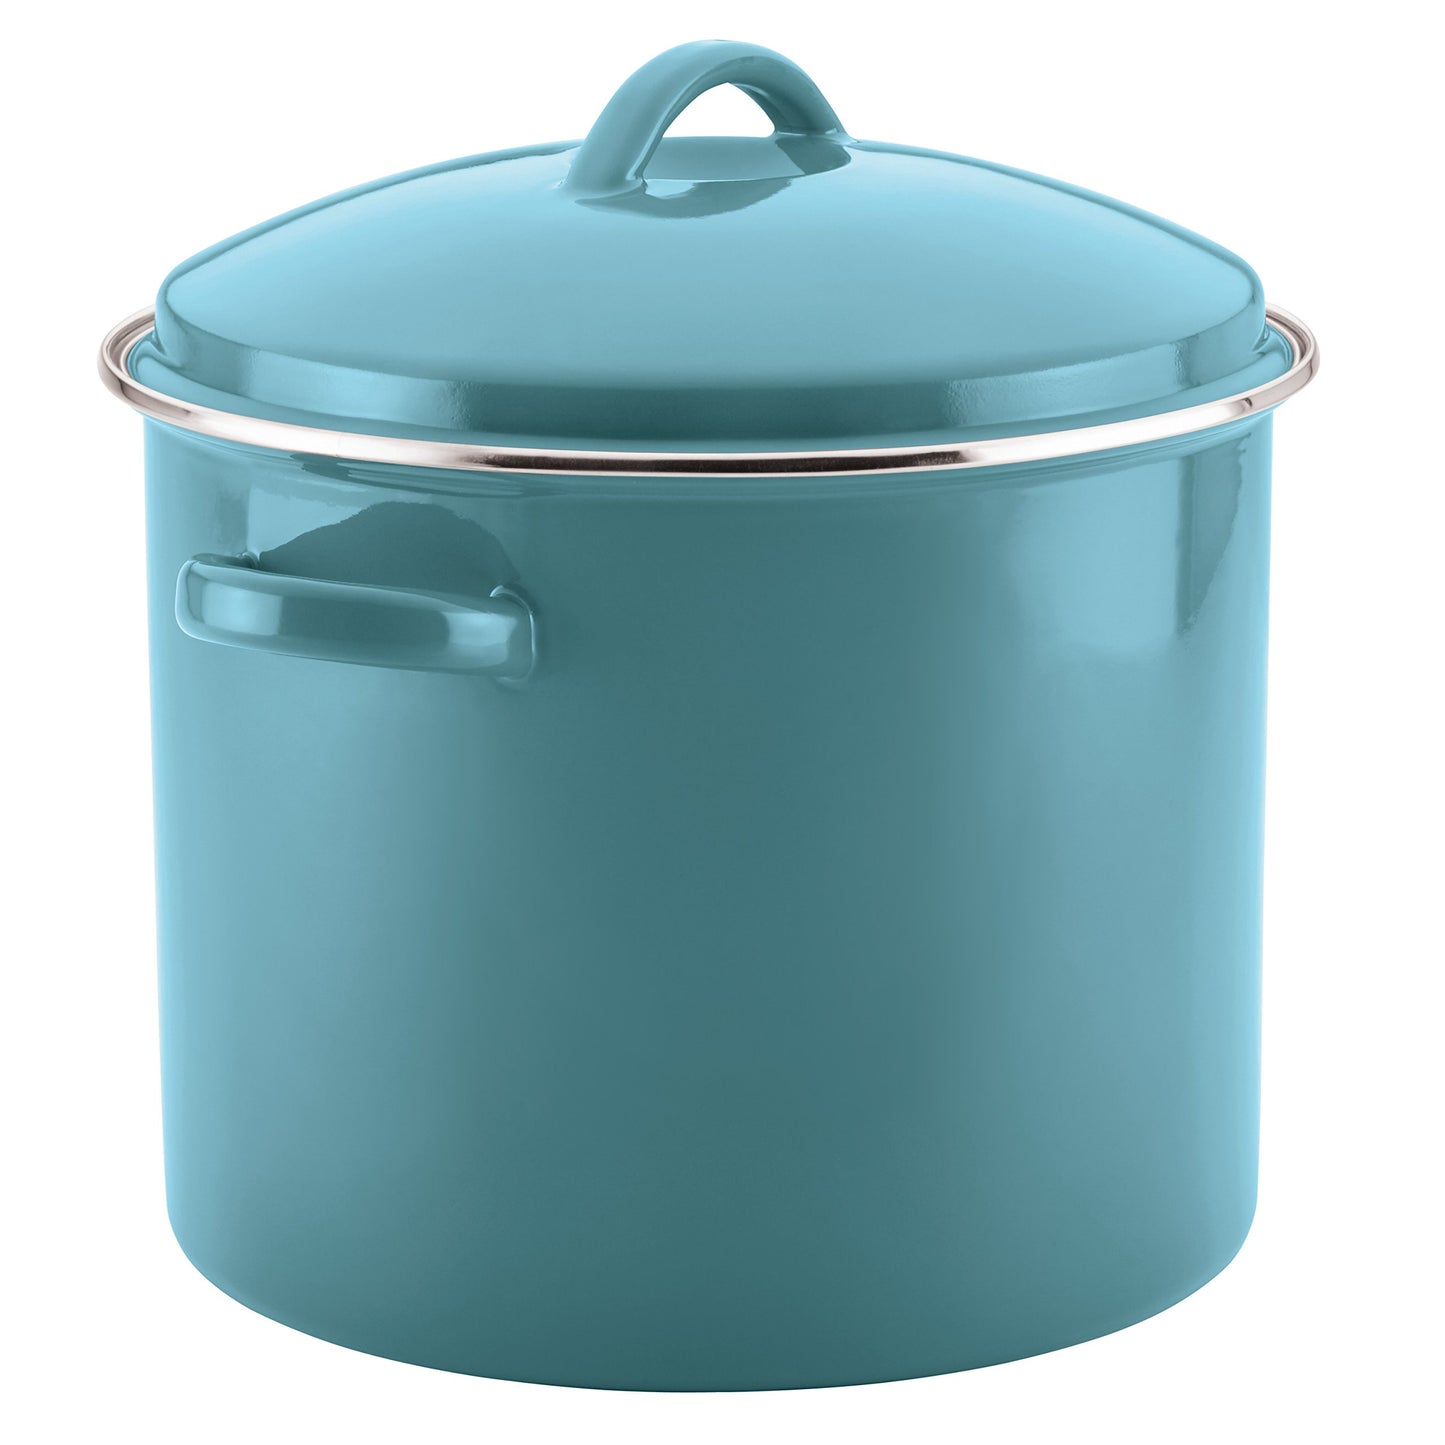 Farberware Enamel on Steel Stock Pot/Stockpot with Lid - 16 Quart, Aqua Blue